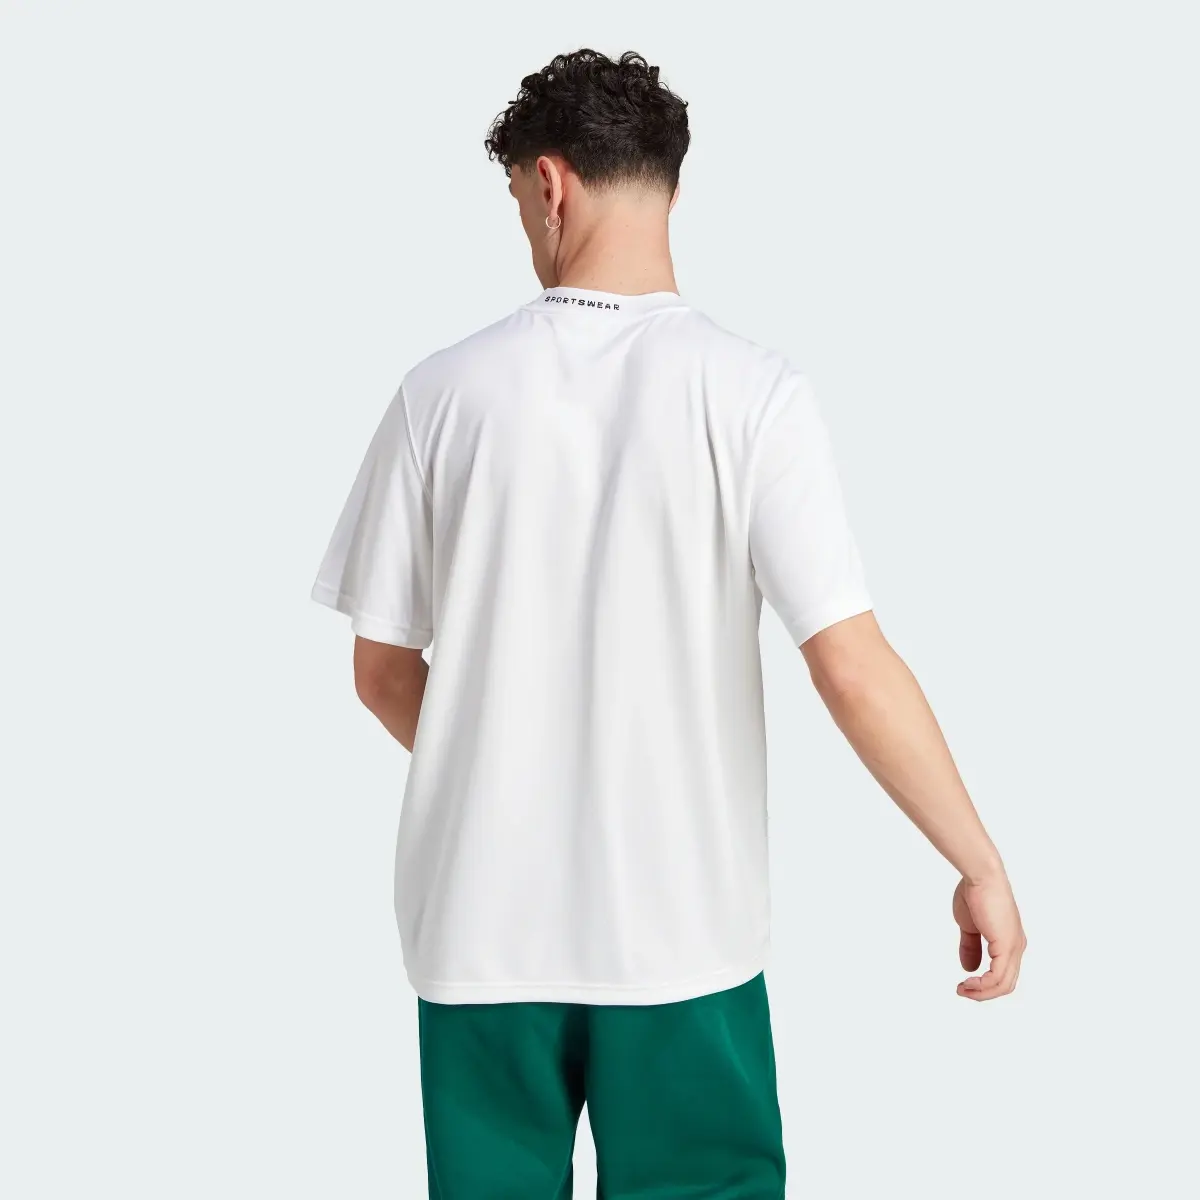 Adidas T-shirt com Costas em Rede. 3